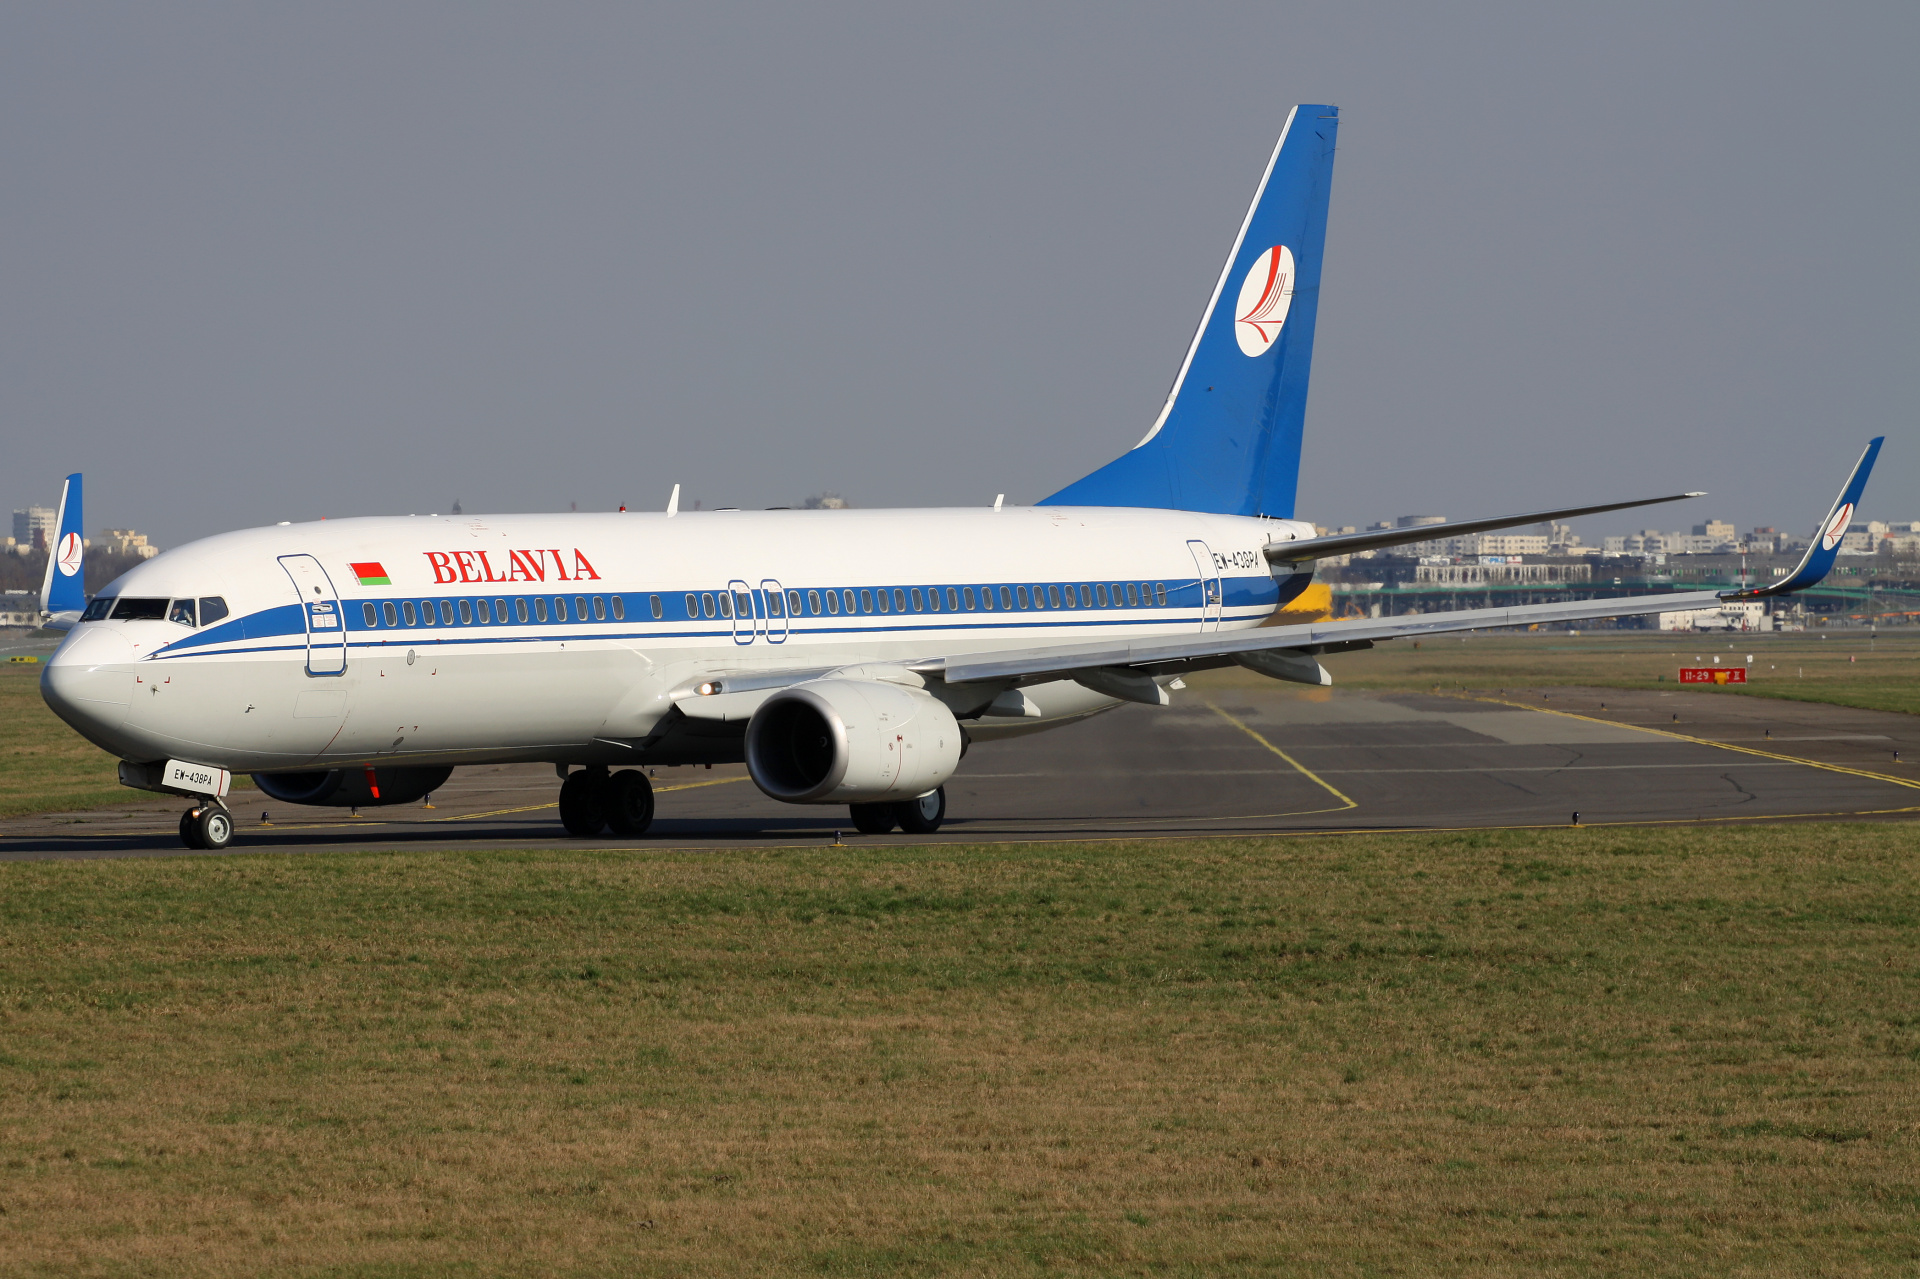 EW-438PA, Belavia (Aircraft » EPWA Spotting » Boeing 737-800)